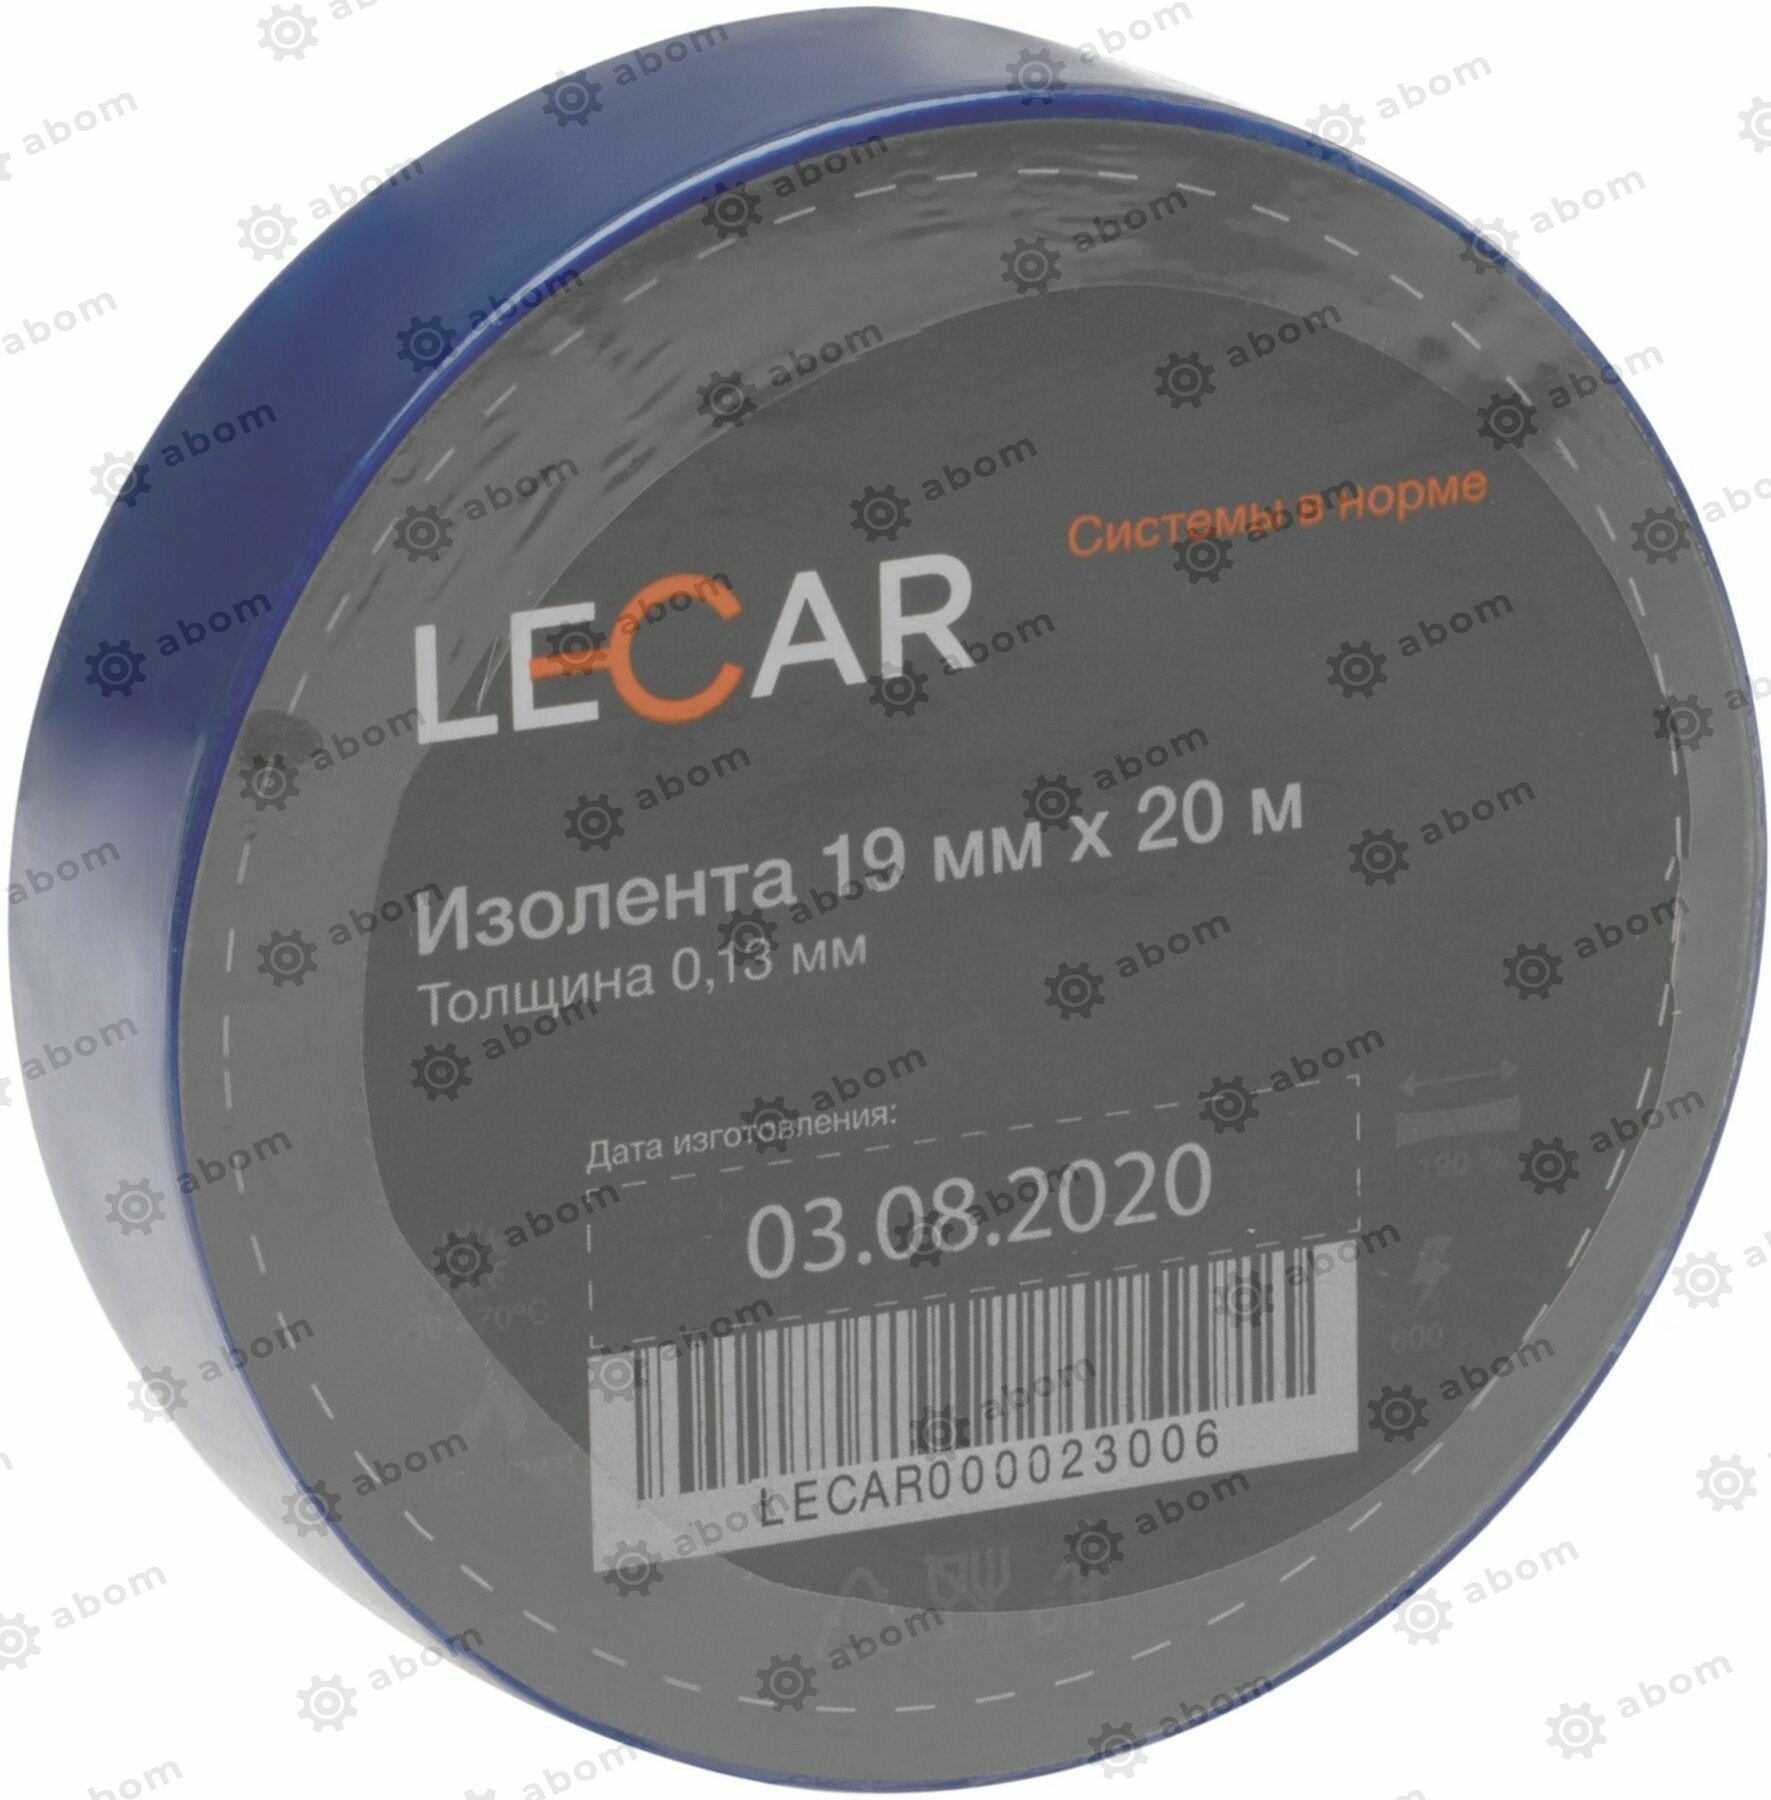 Изолента 19 мм х 20 м синяя Lecar ЛИ LECAR000023006 | цена за 1 шт